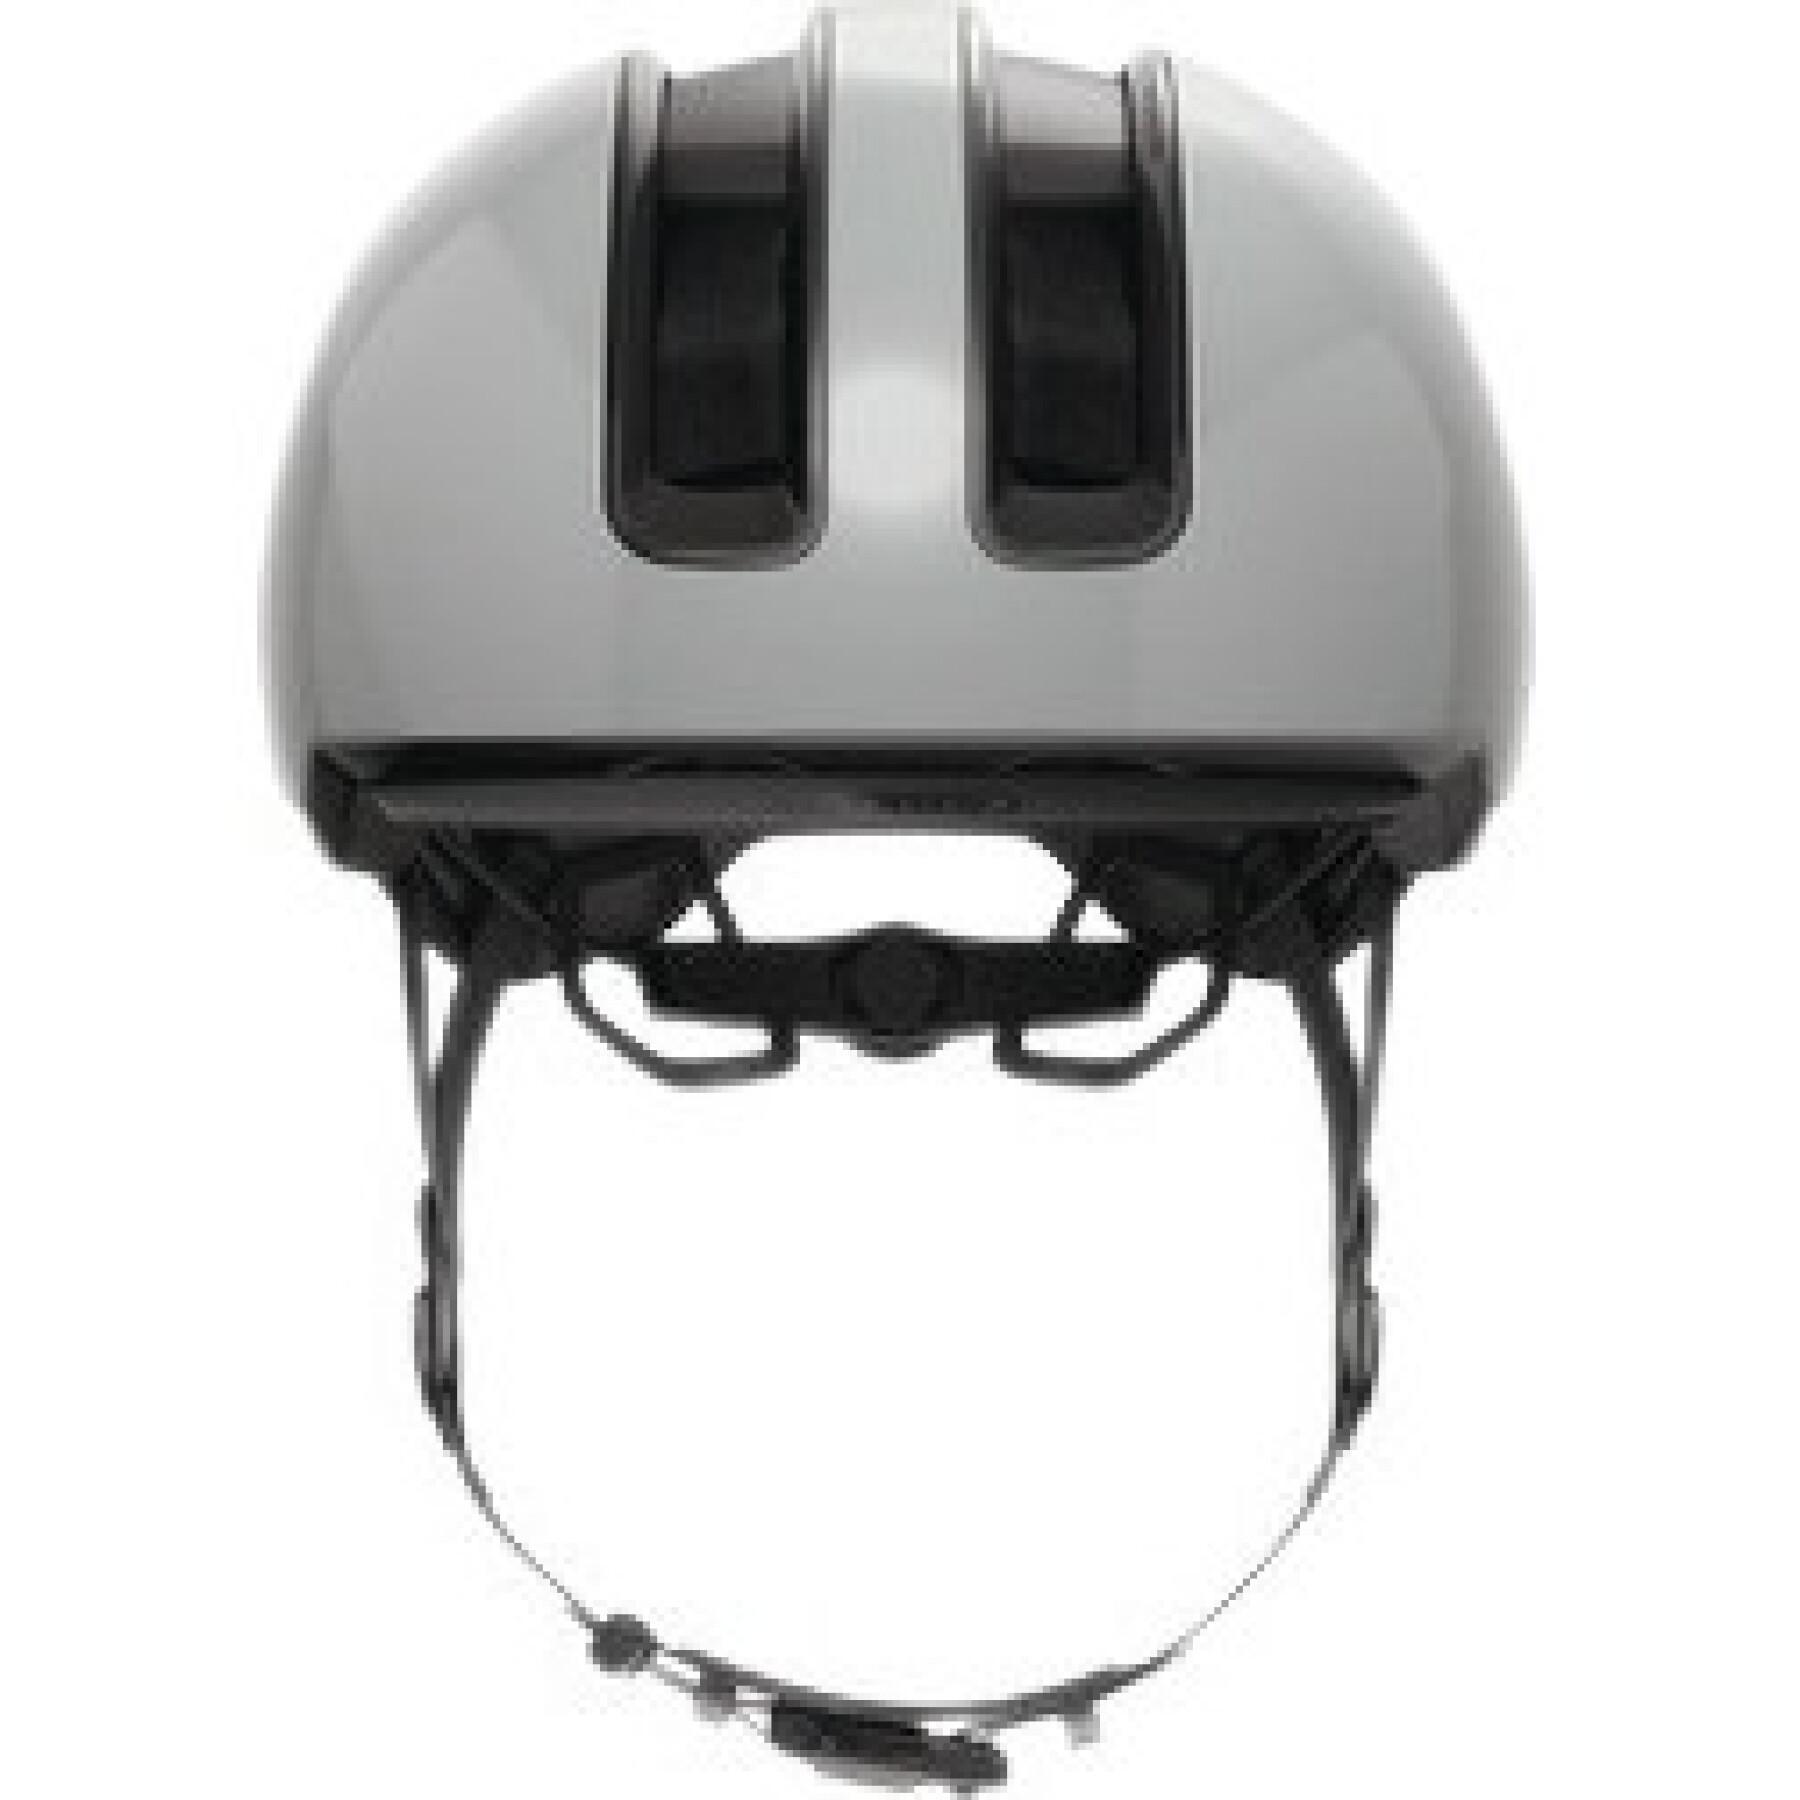 Bike helmet Abus HUD-Y